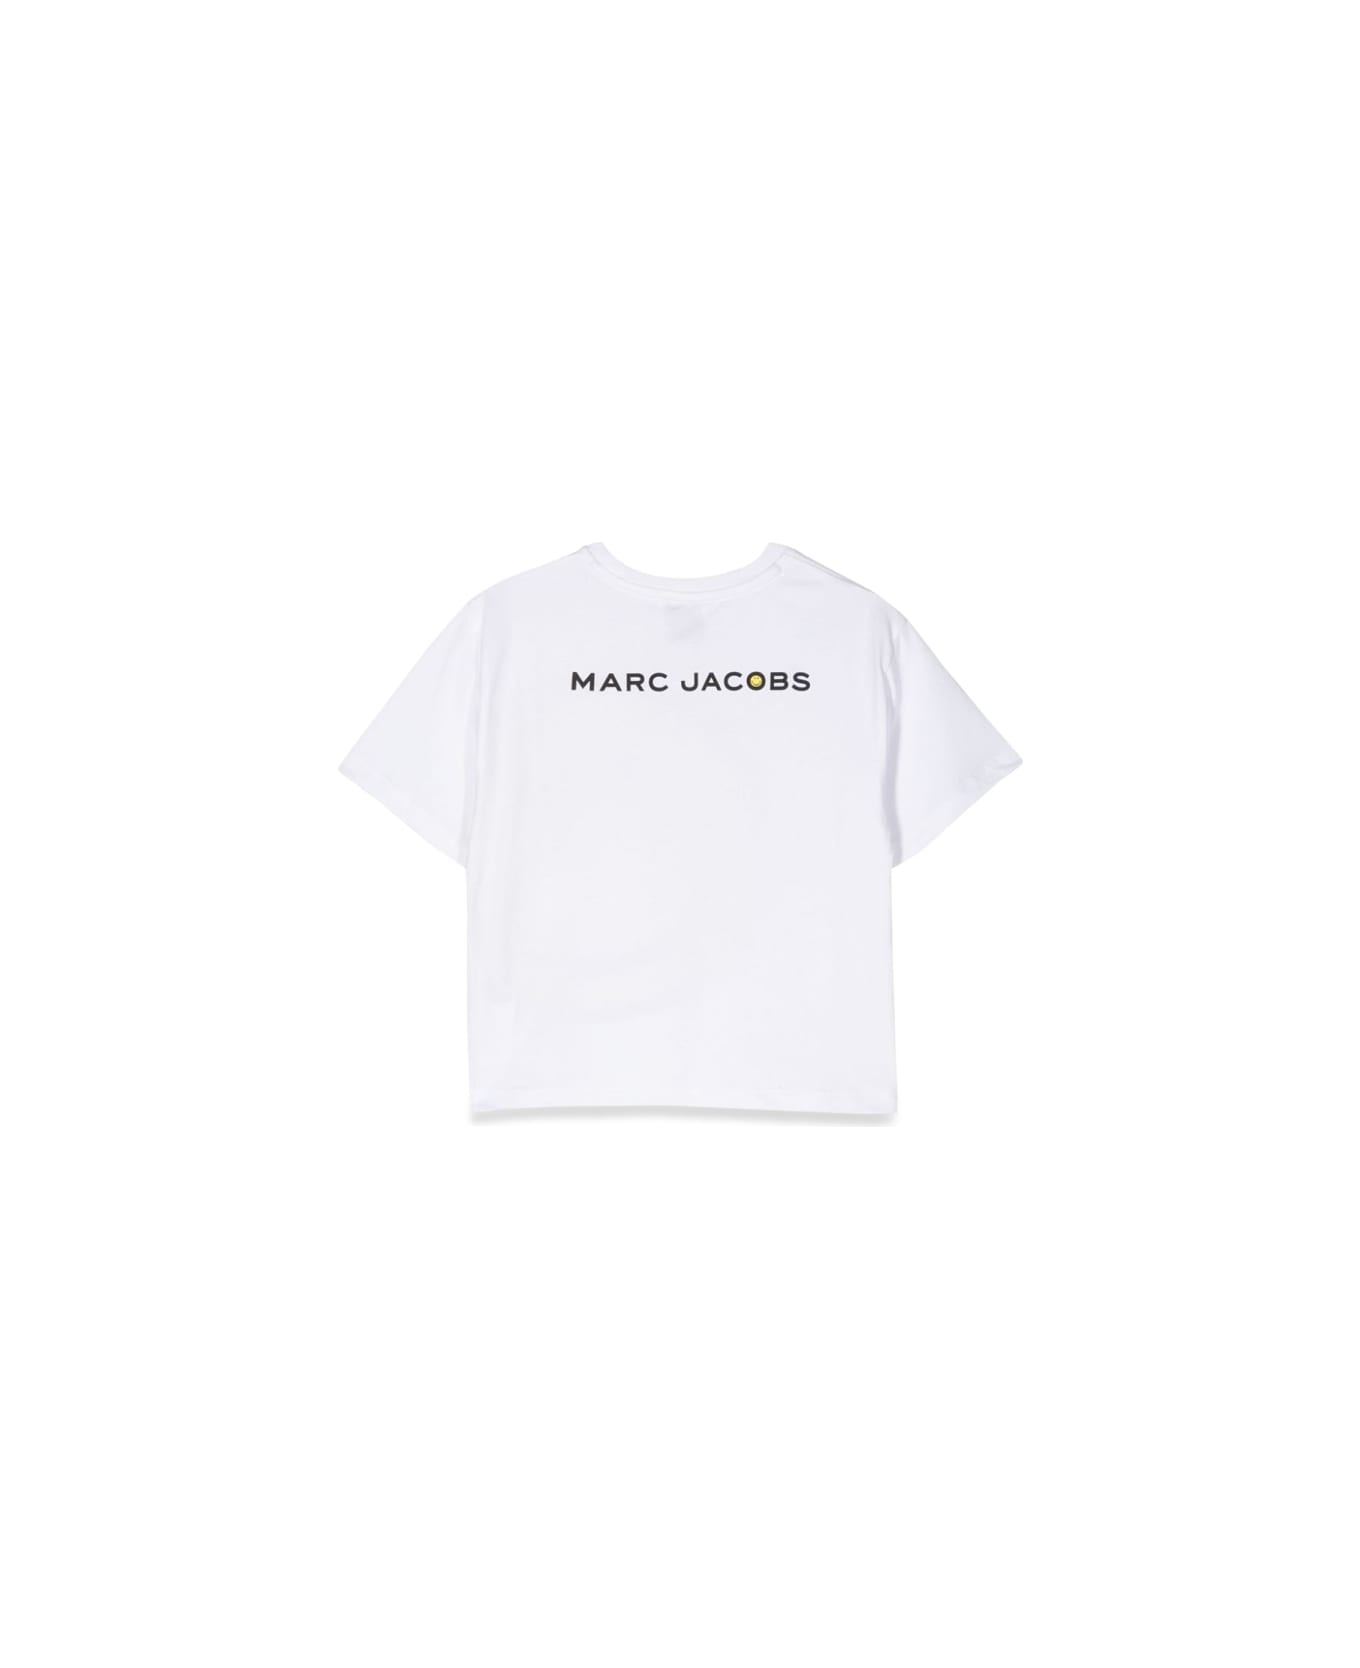 Marc Jacobs Tee Shirt - WHITE